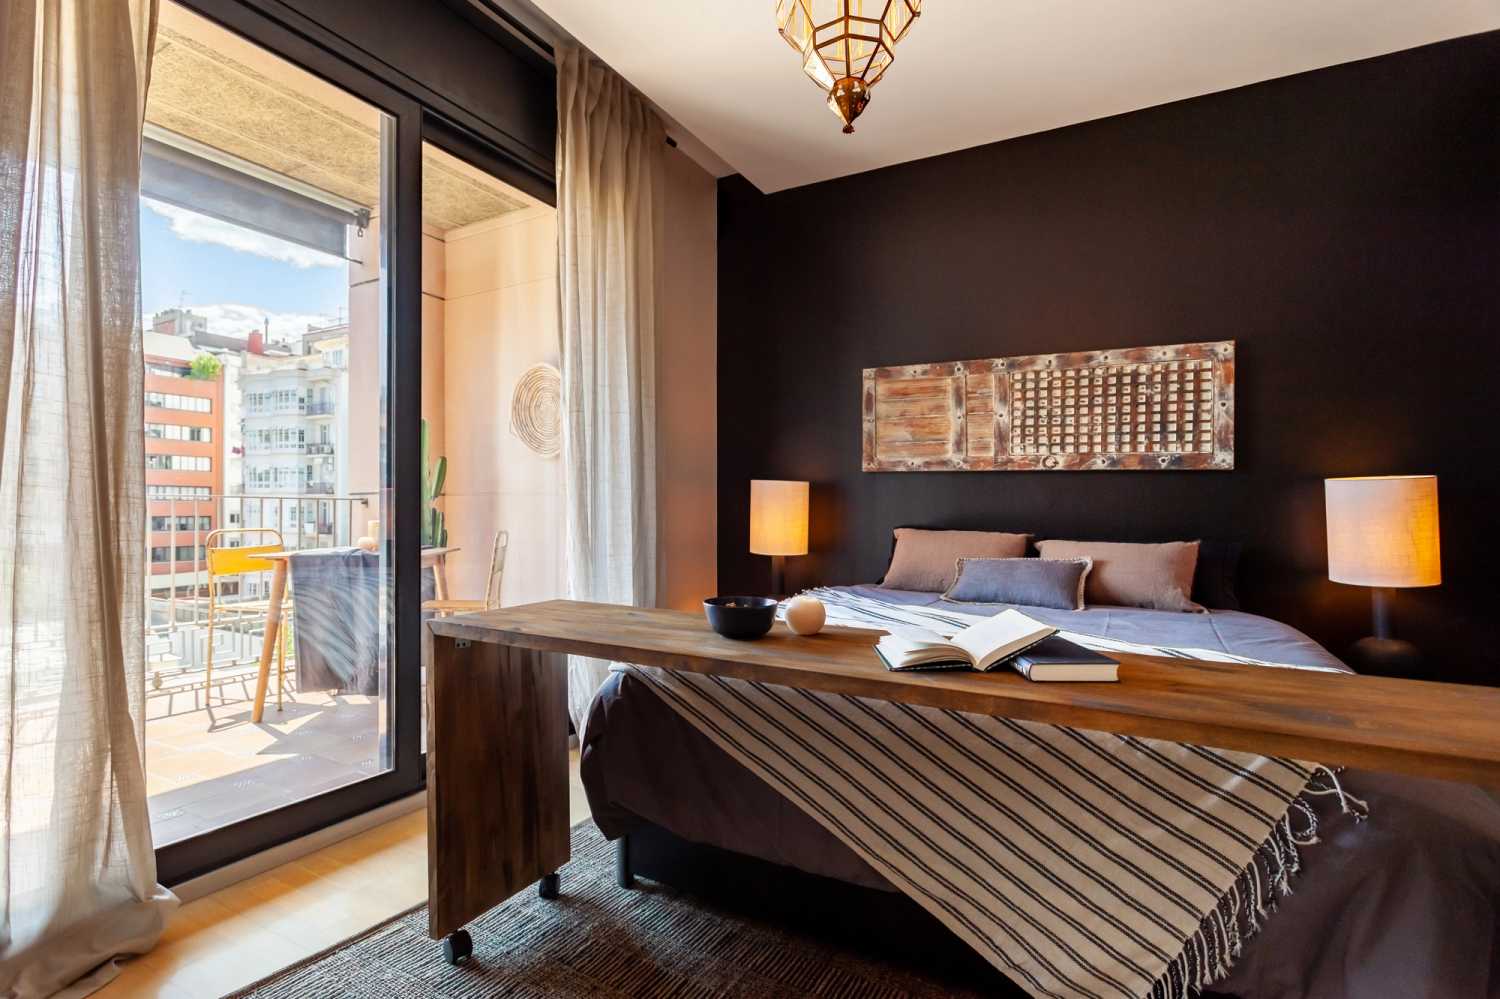 1654091139-bedroom-with-balcony-barcelona-passeig-de-gracia-79-l-08.jpg